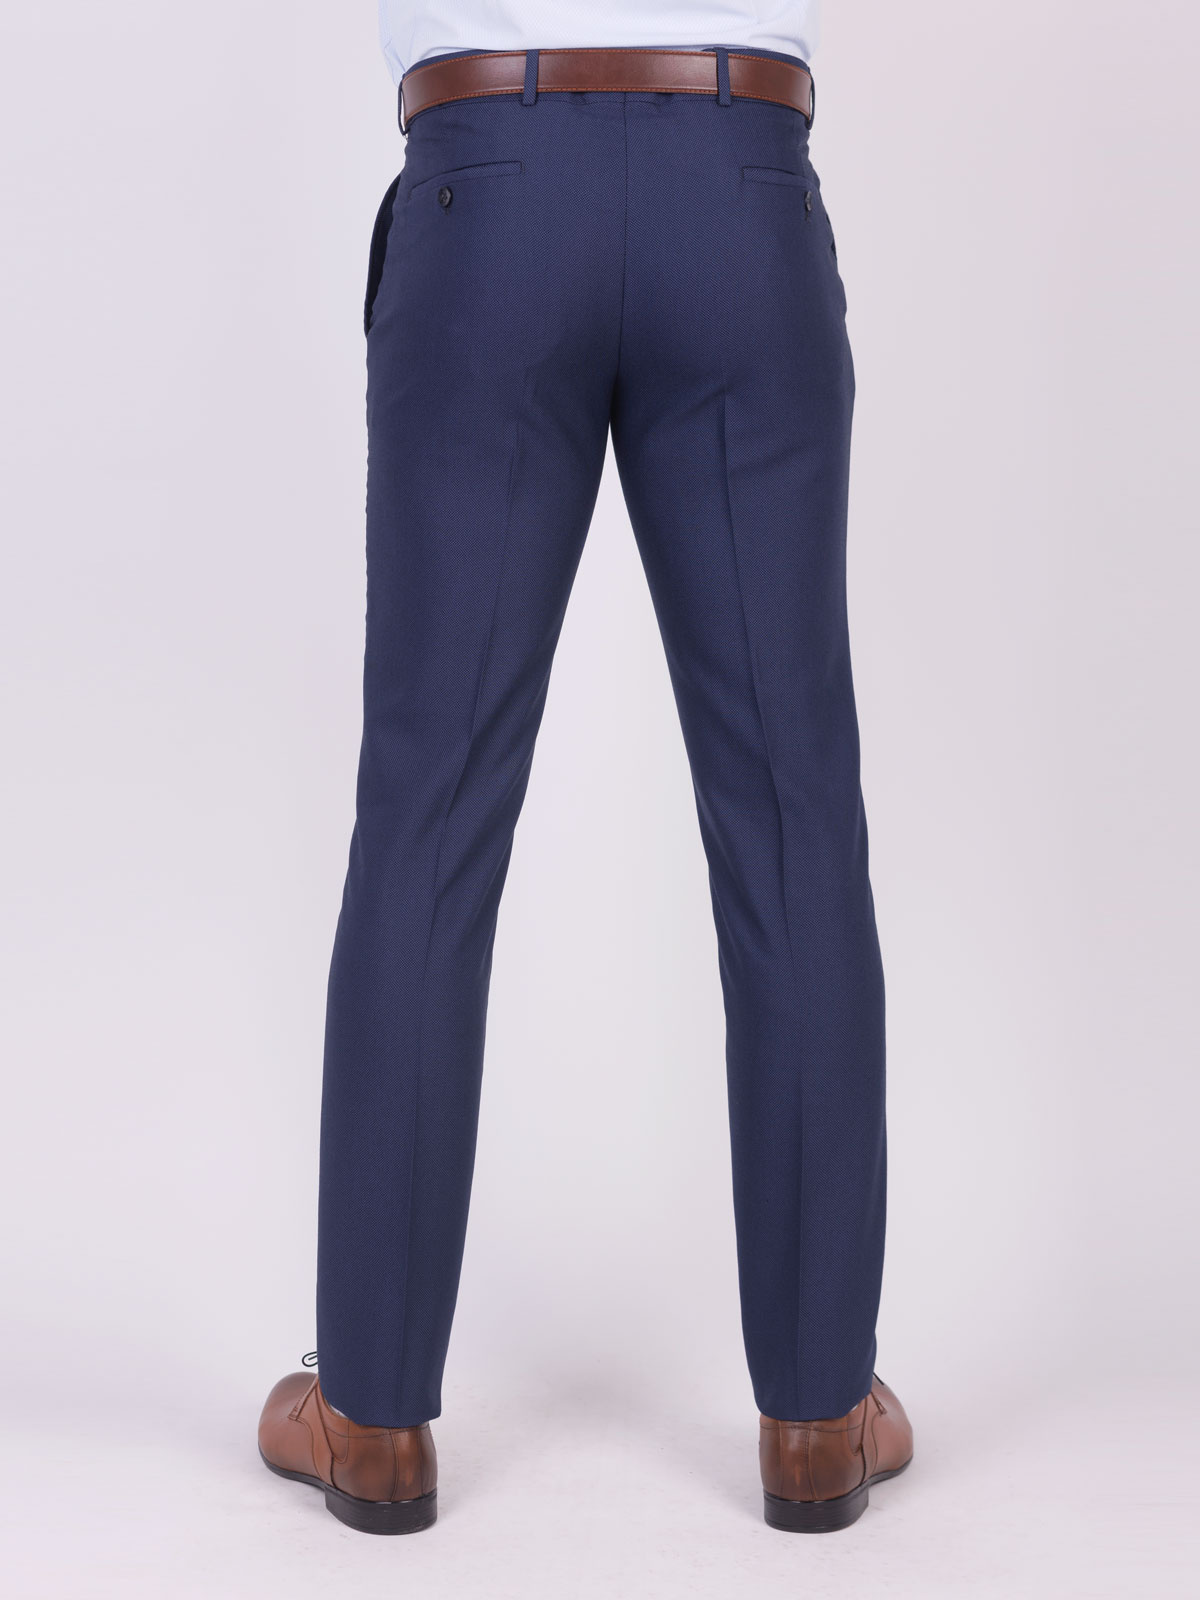 Pantaloni eleganti albastru inchis - 63336 € 62.99 img2